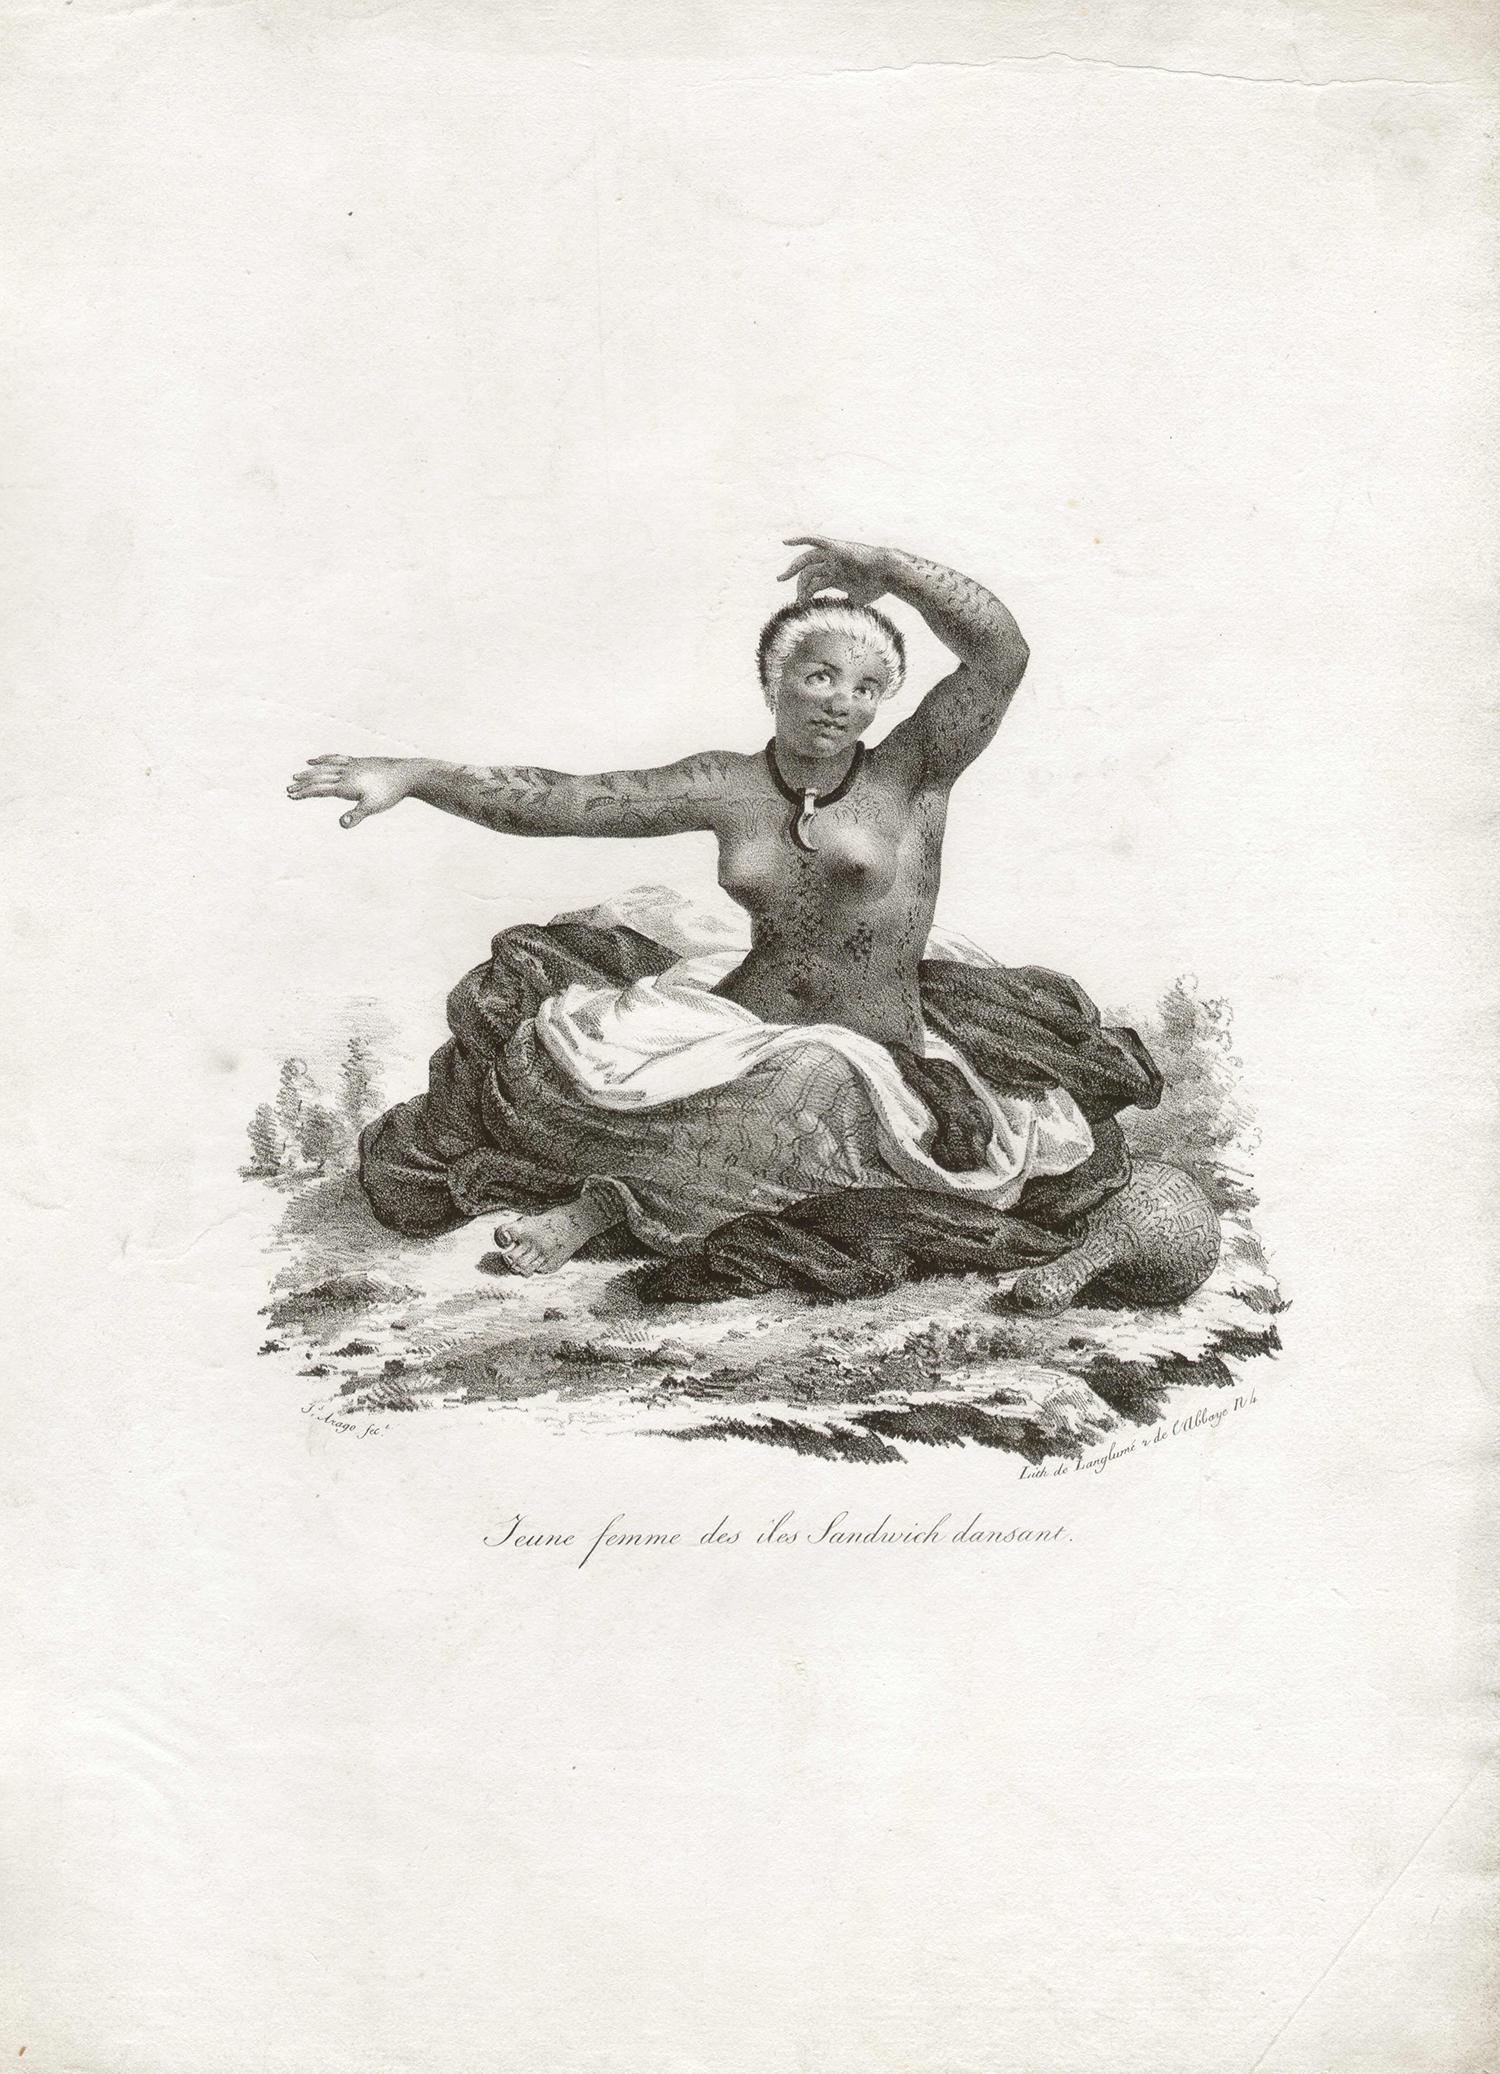 'Jeune Femme des Iles Sandwich dansant', Hawaii, antique lithograph print - Print by After Jacques Arago